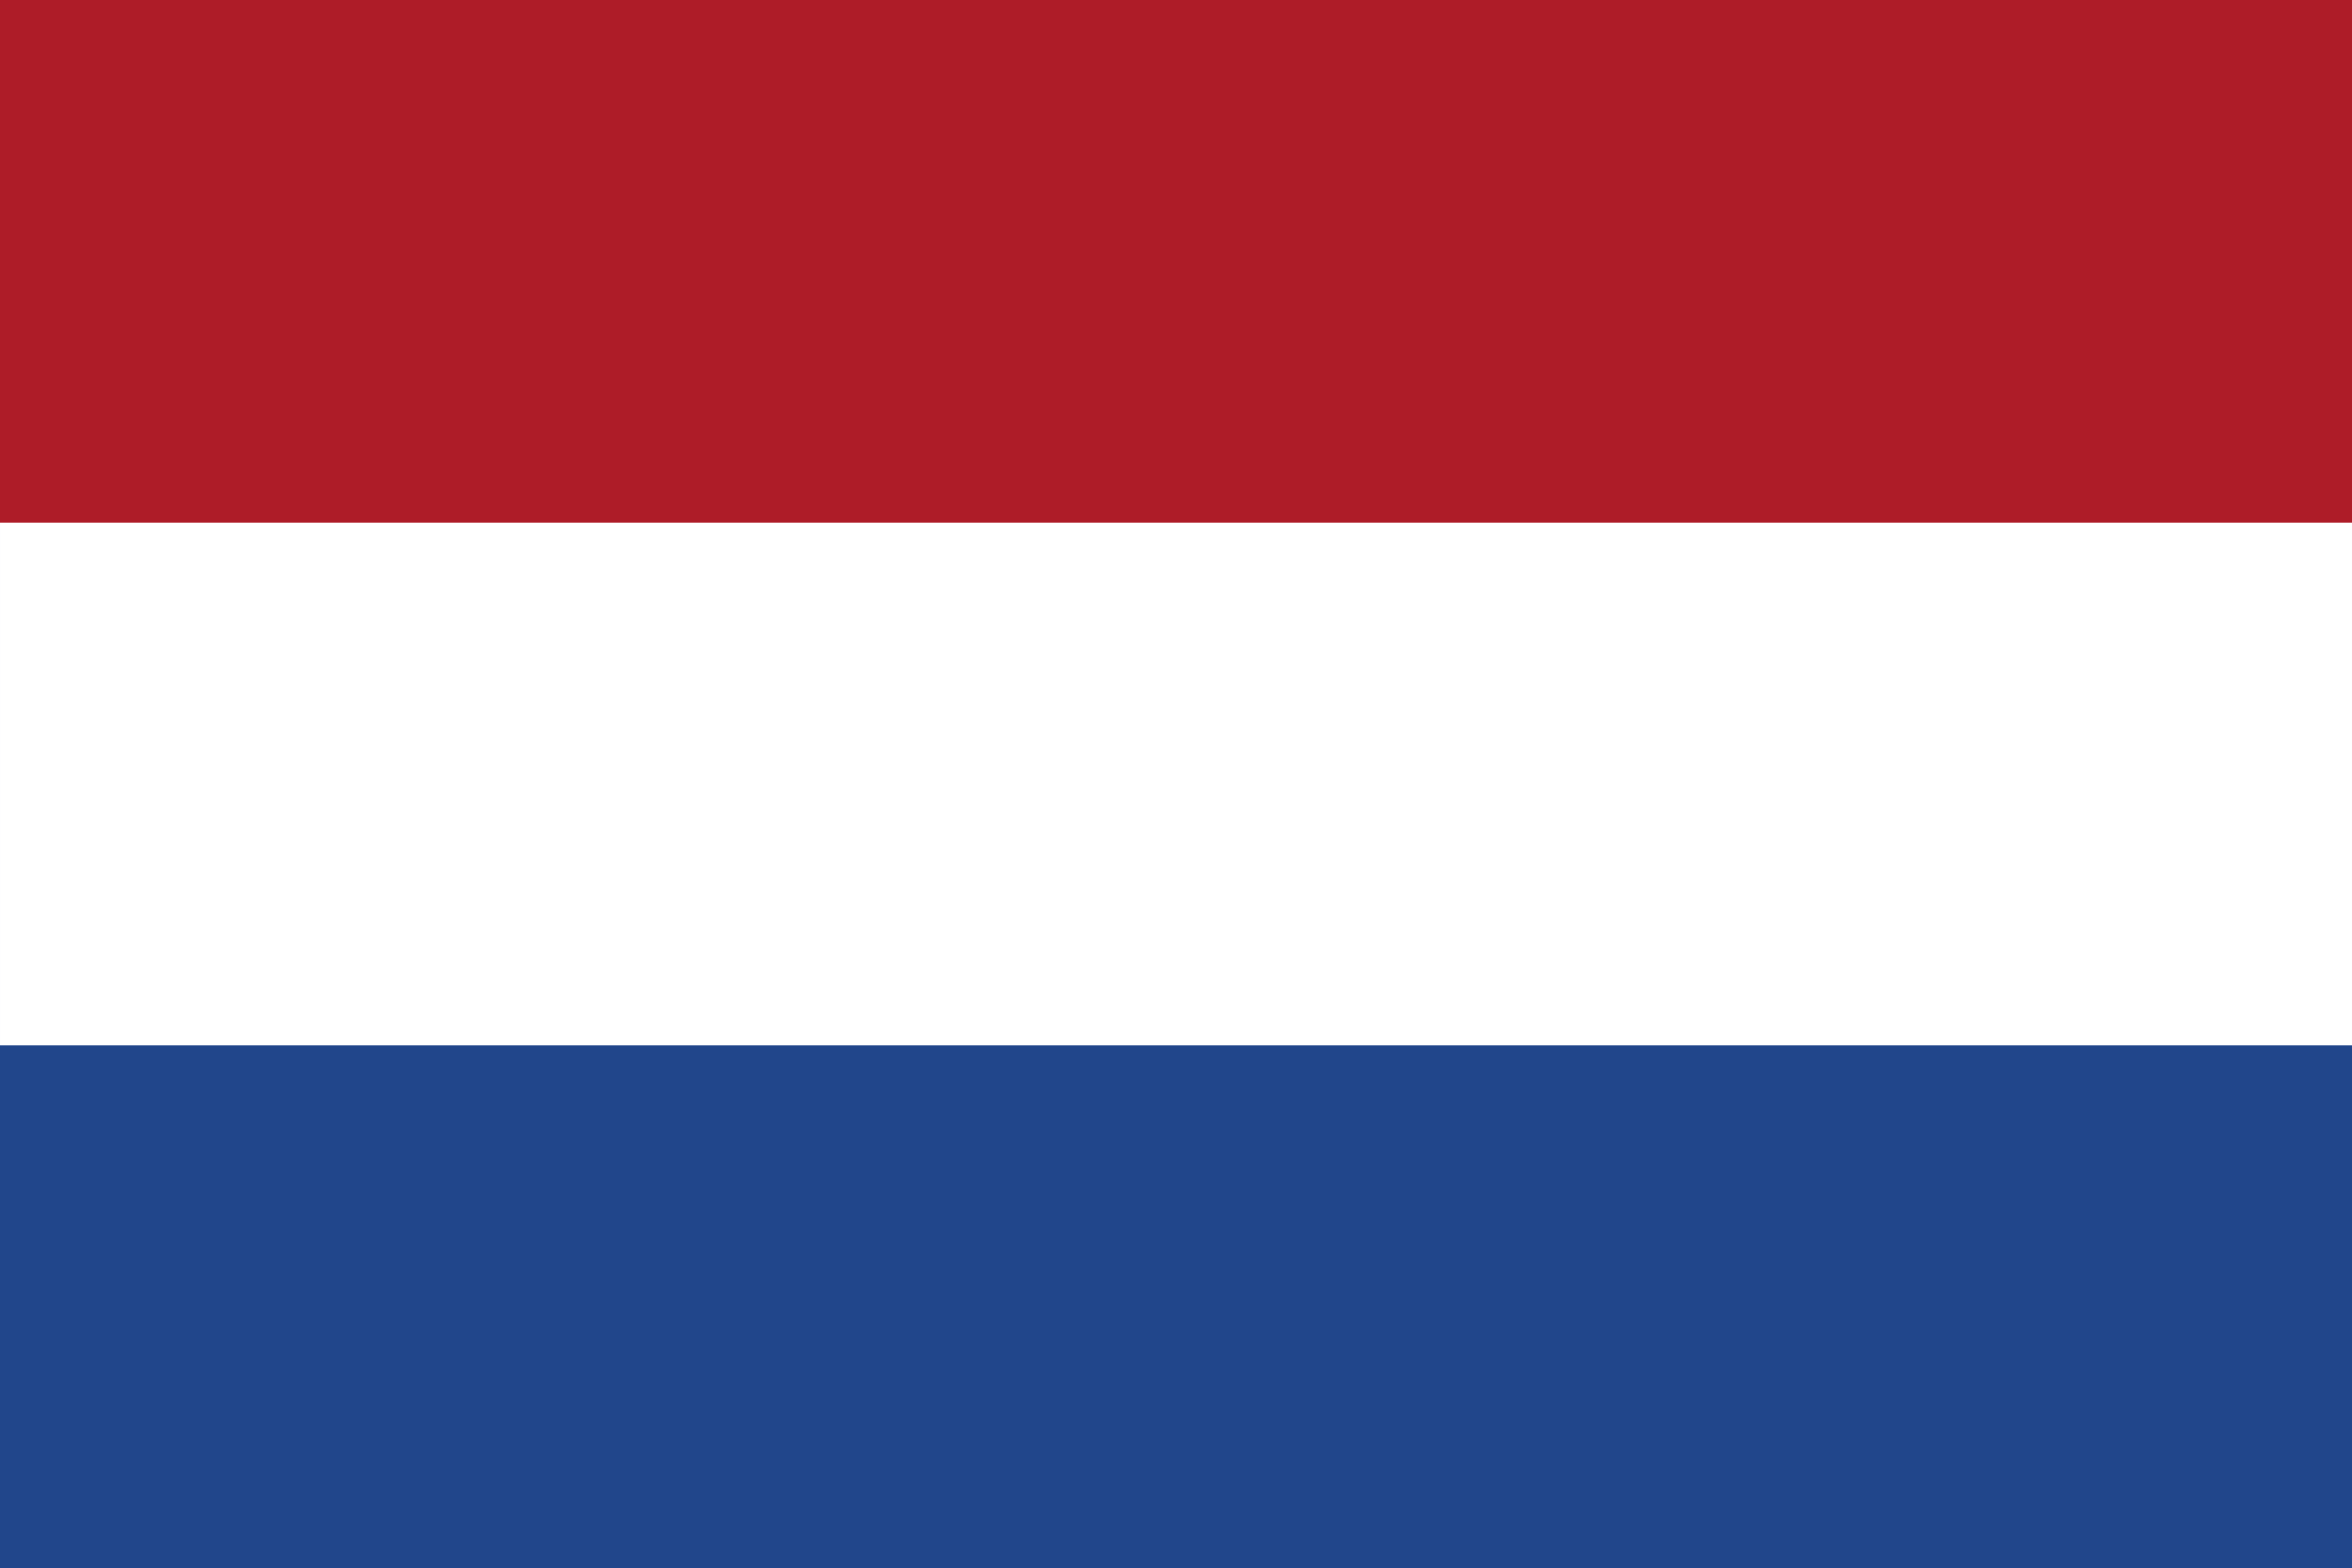 Netherlands Flag : Netherlands Flag for Sale | Buy Netherlands Flags